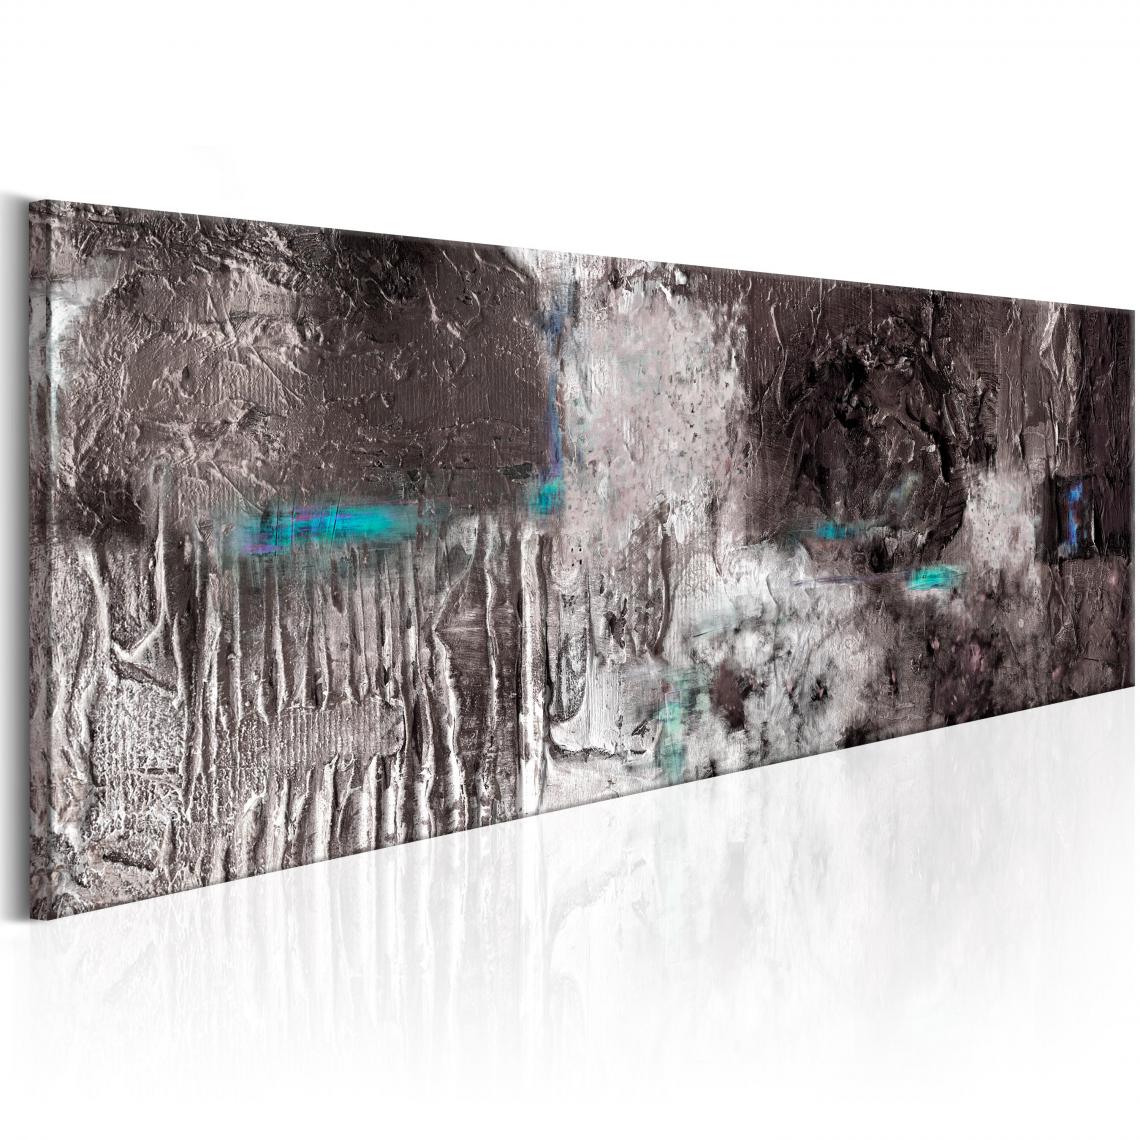 Decoshop26 - Tableau sur toile décoration murale image imprimée cadre en bois à suspendre Machine d'argent 150x50 cm 11_0001257 - Tableaux, peintures